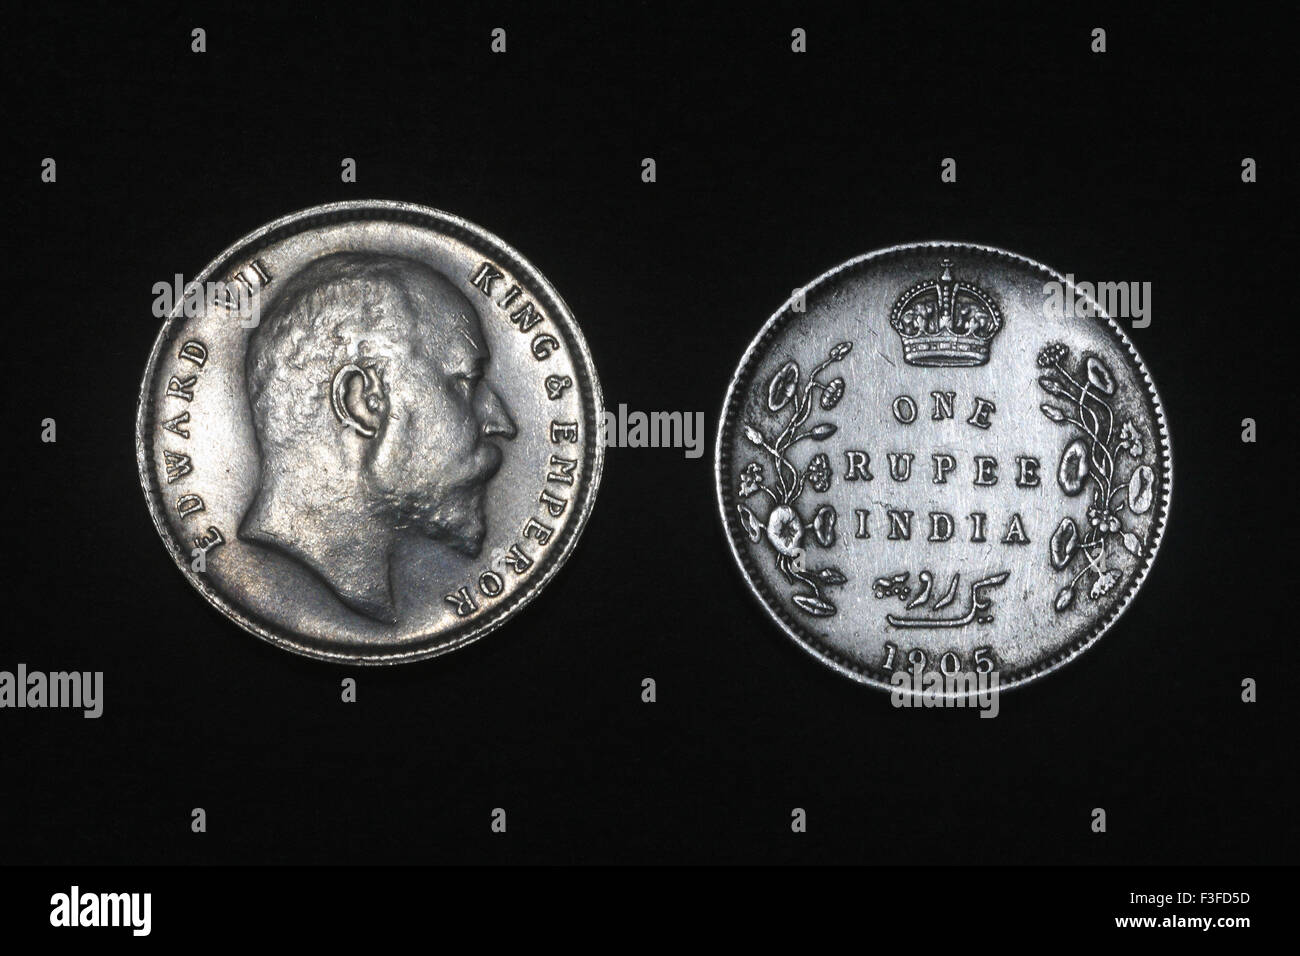 Monetazione ; India britannica monetazione ; Edward VII re e imperatore con uno rupee coin nel 1905 sulla moneta Foto Stock